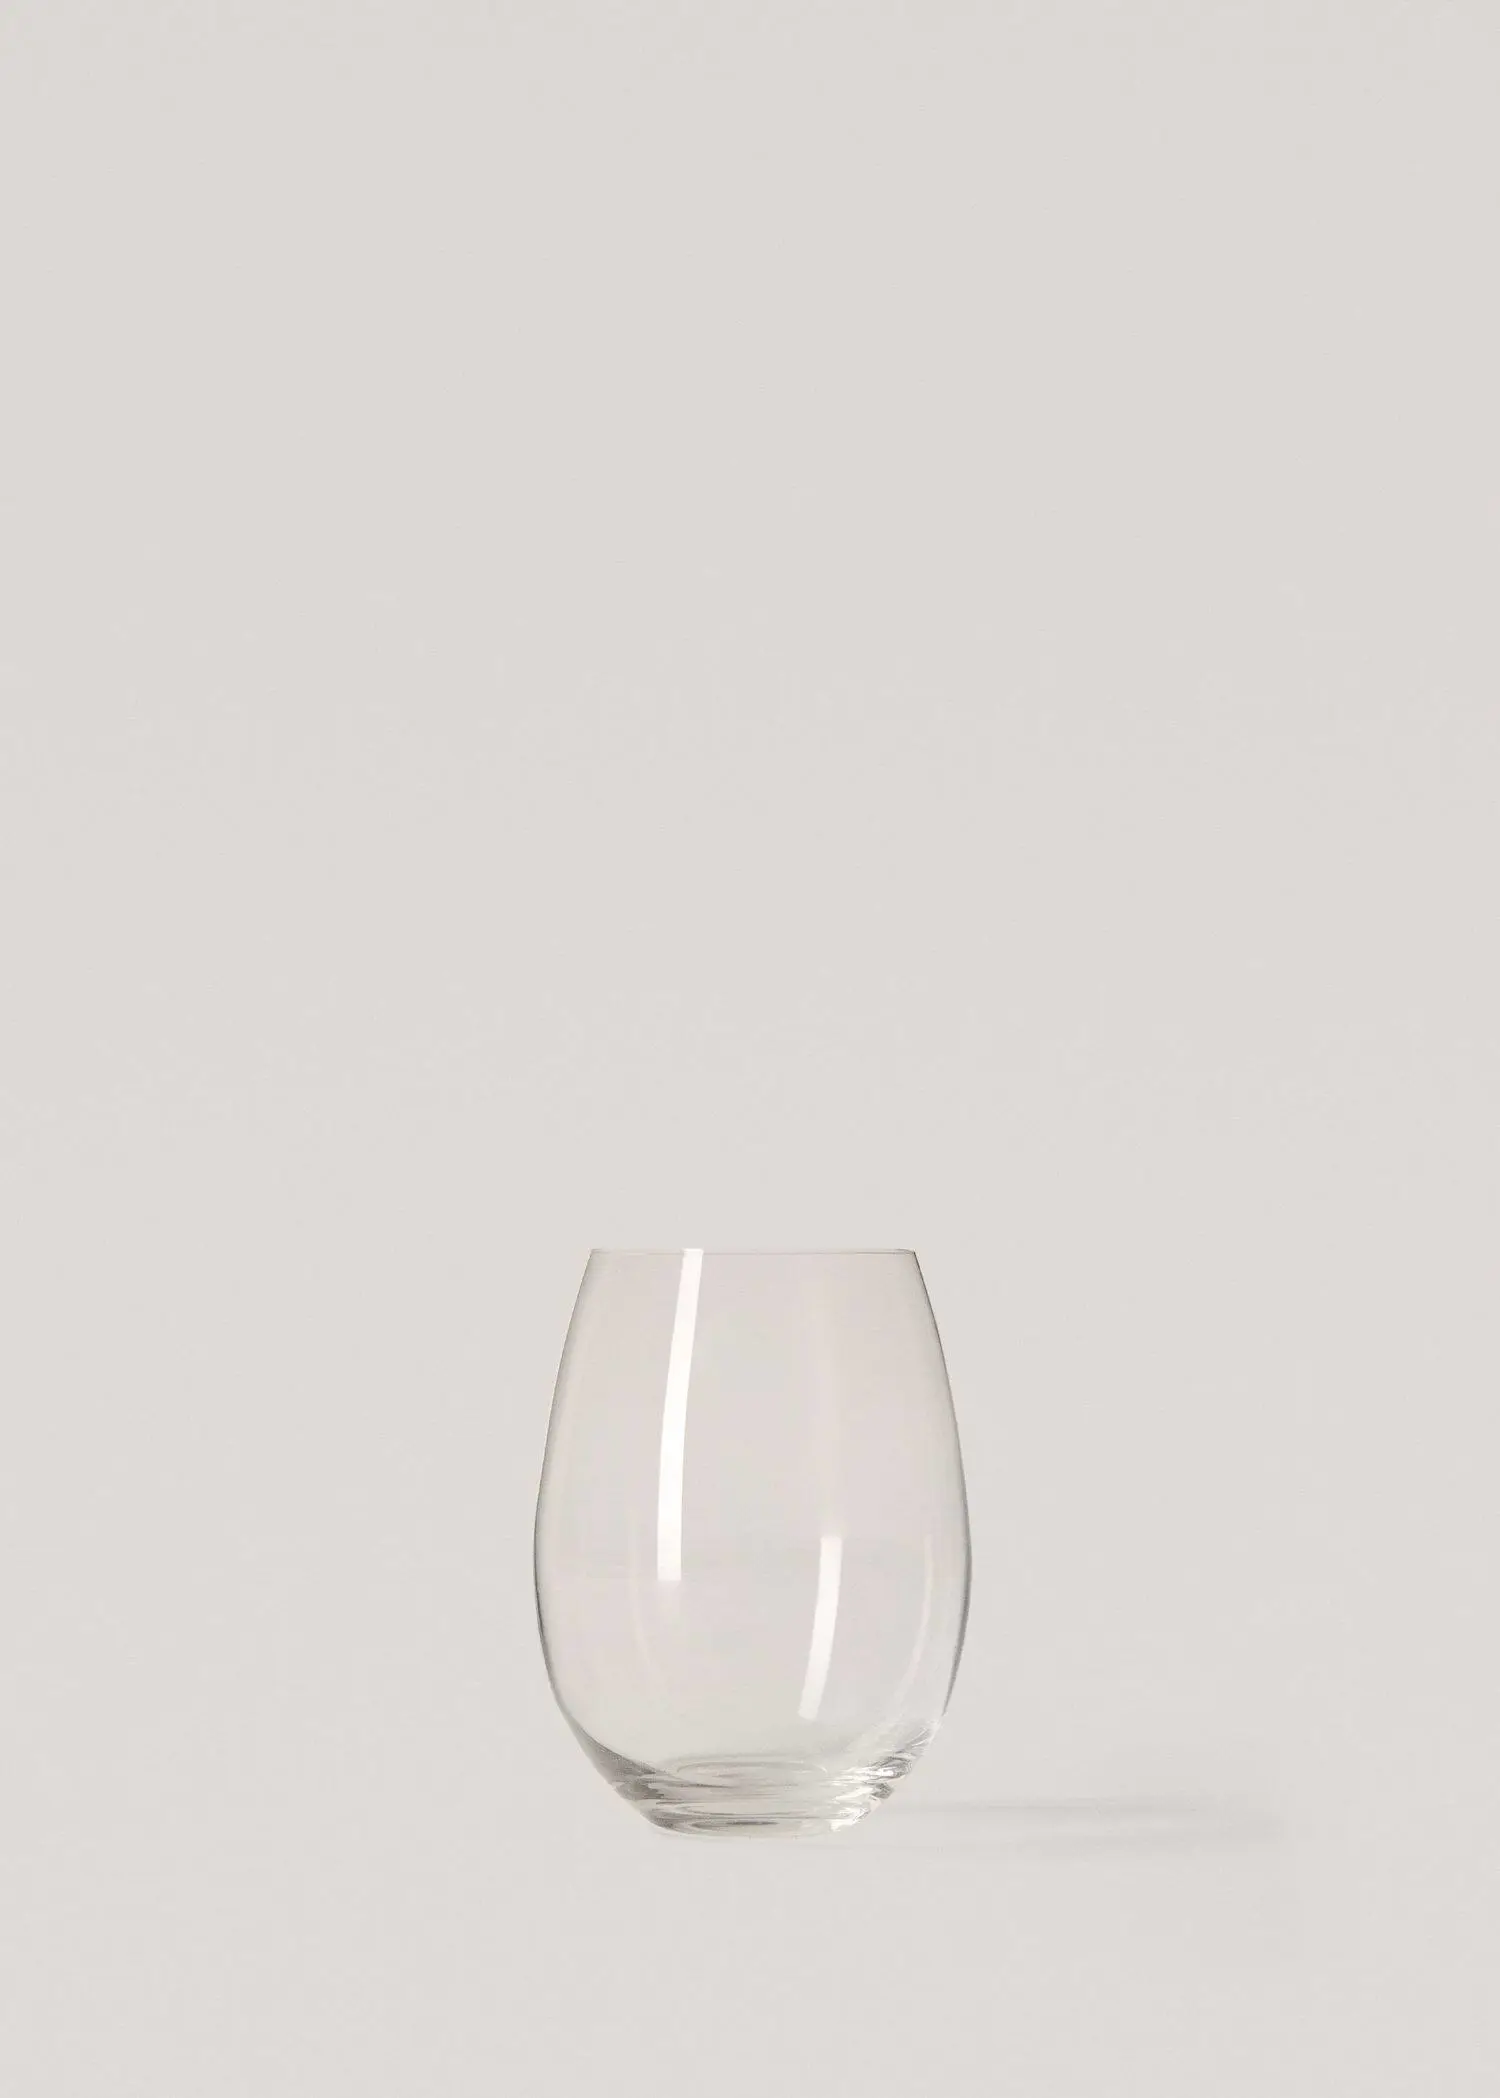 Mango Pękata szklanka ze szkła. 1